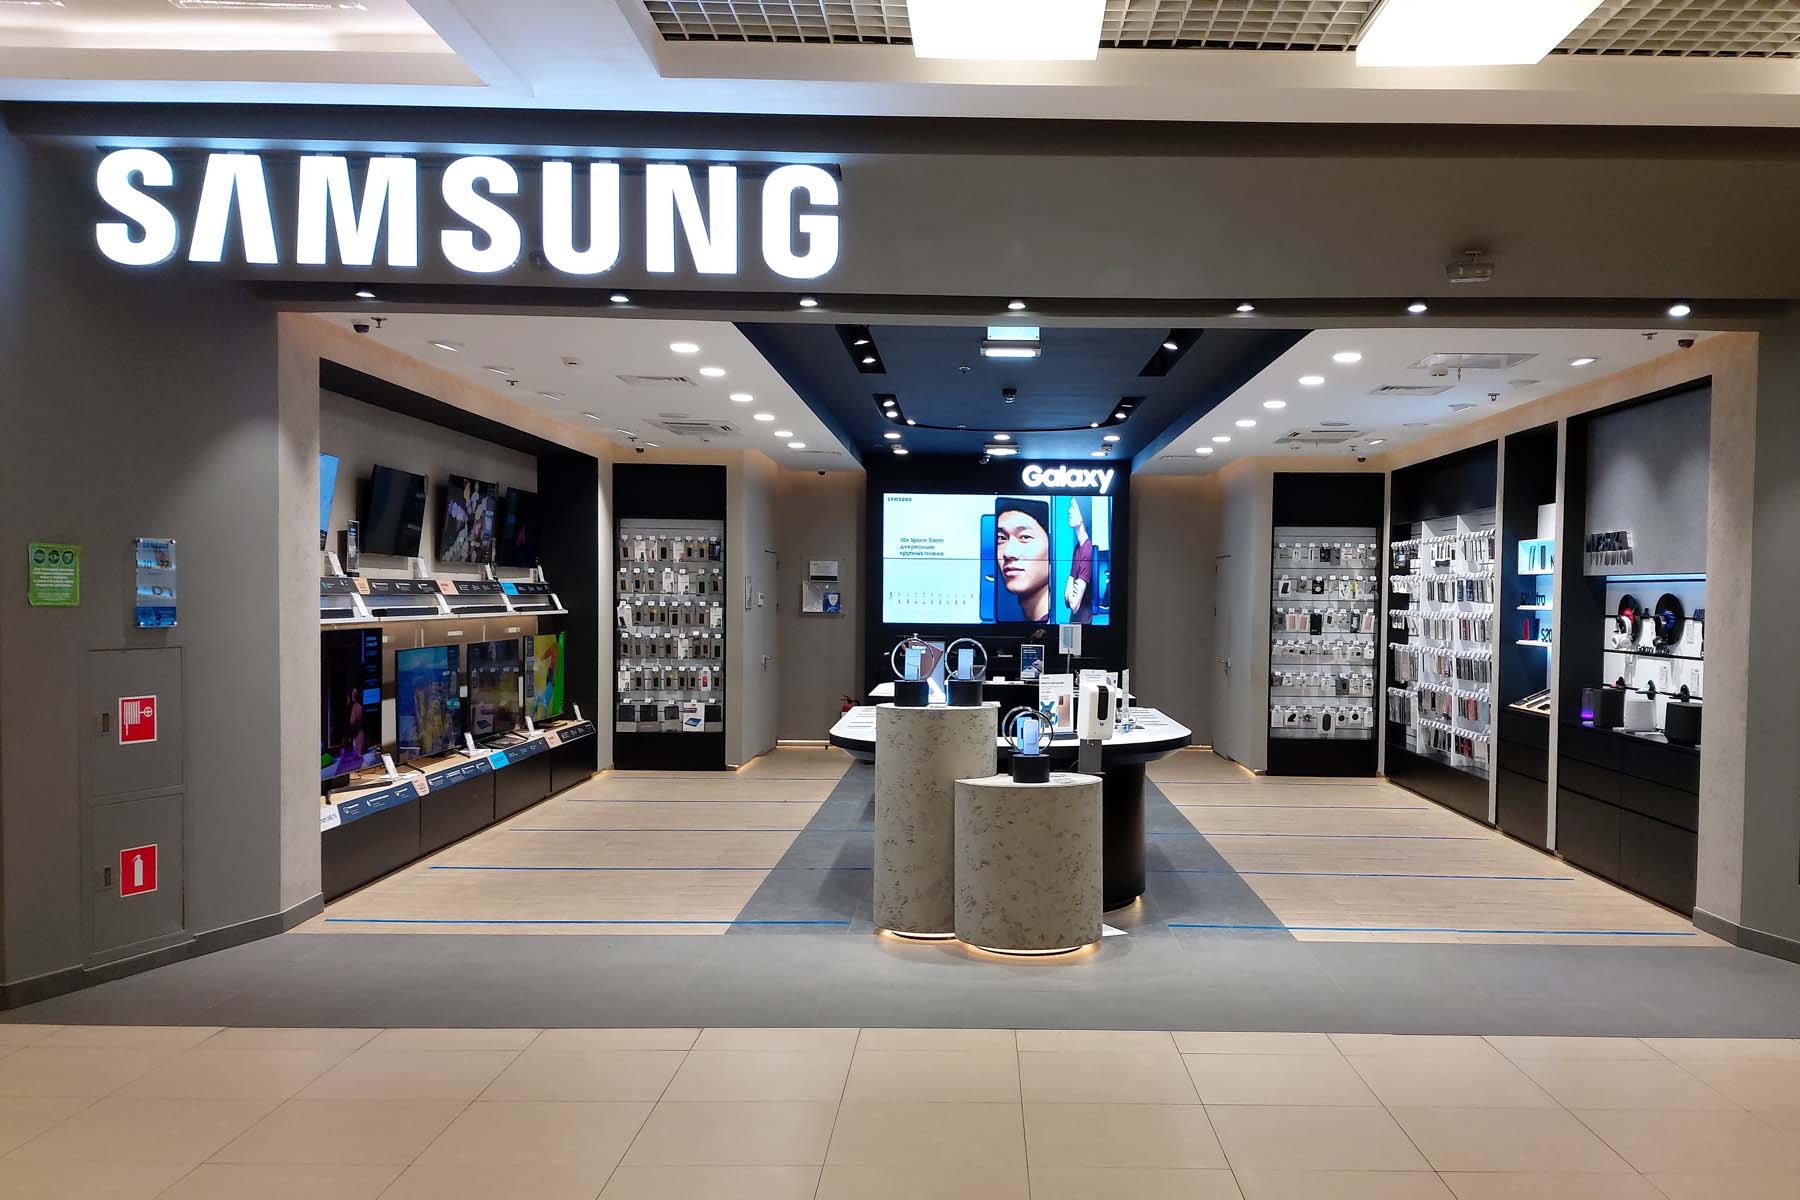 Самсунг Galaxy Store